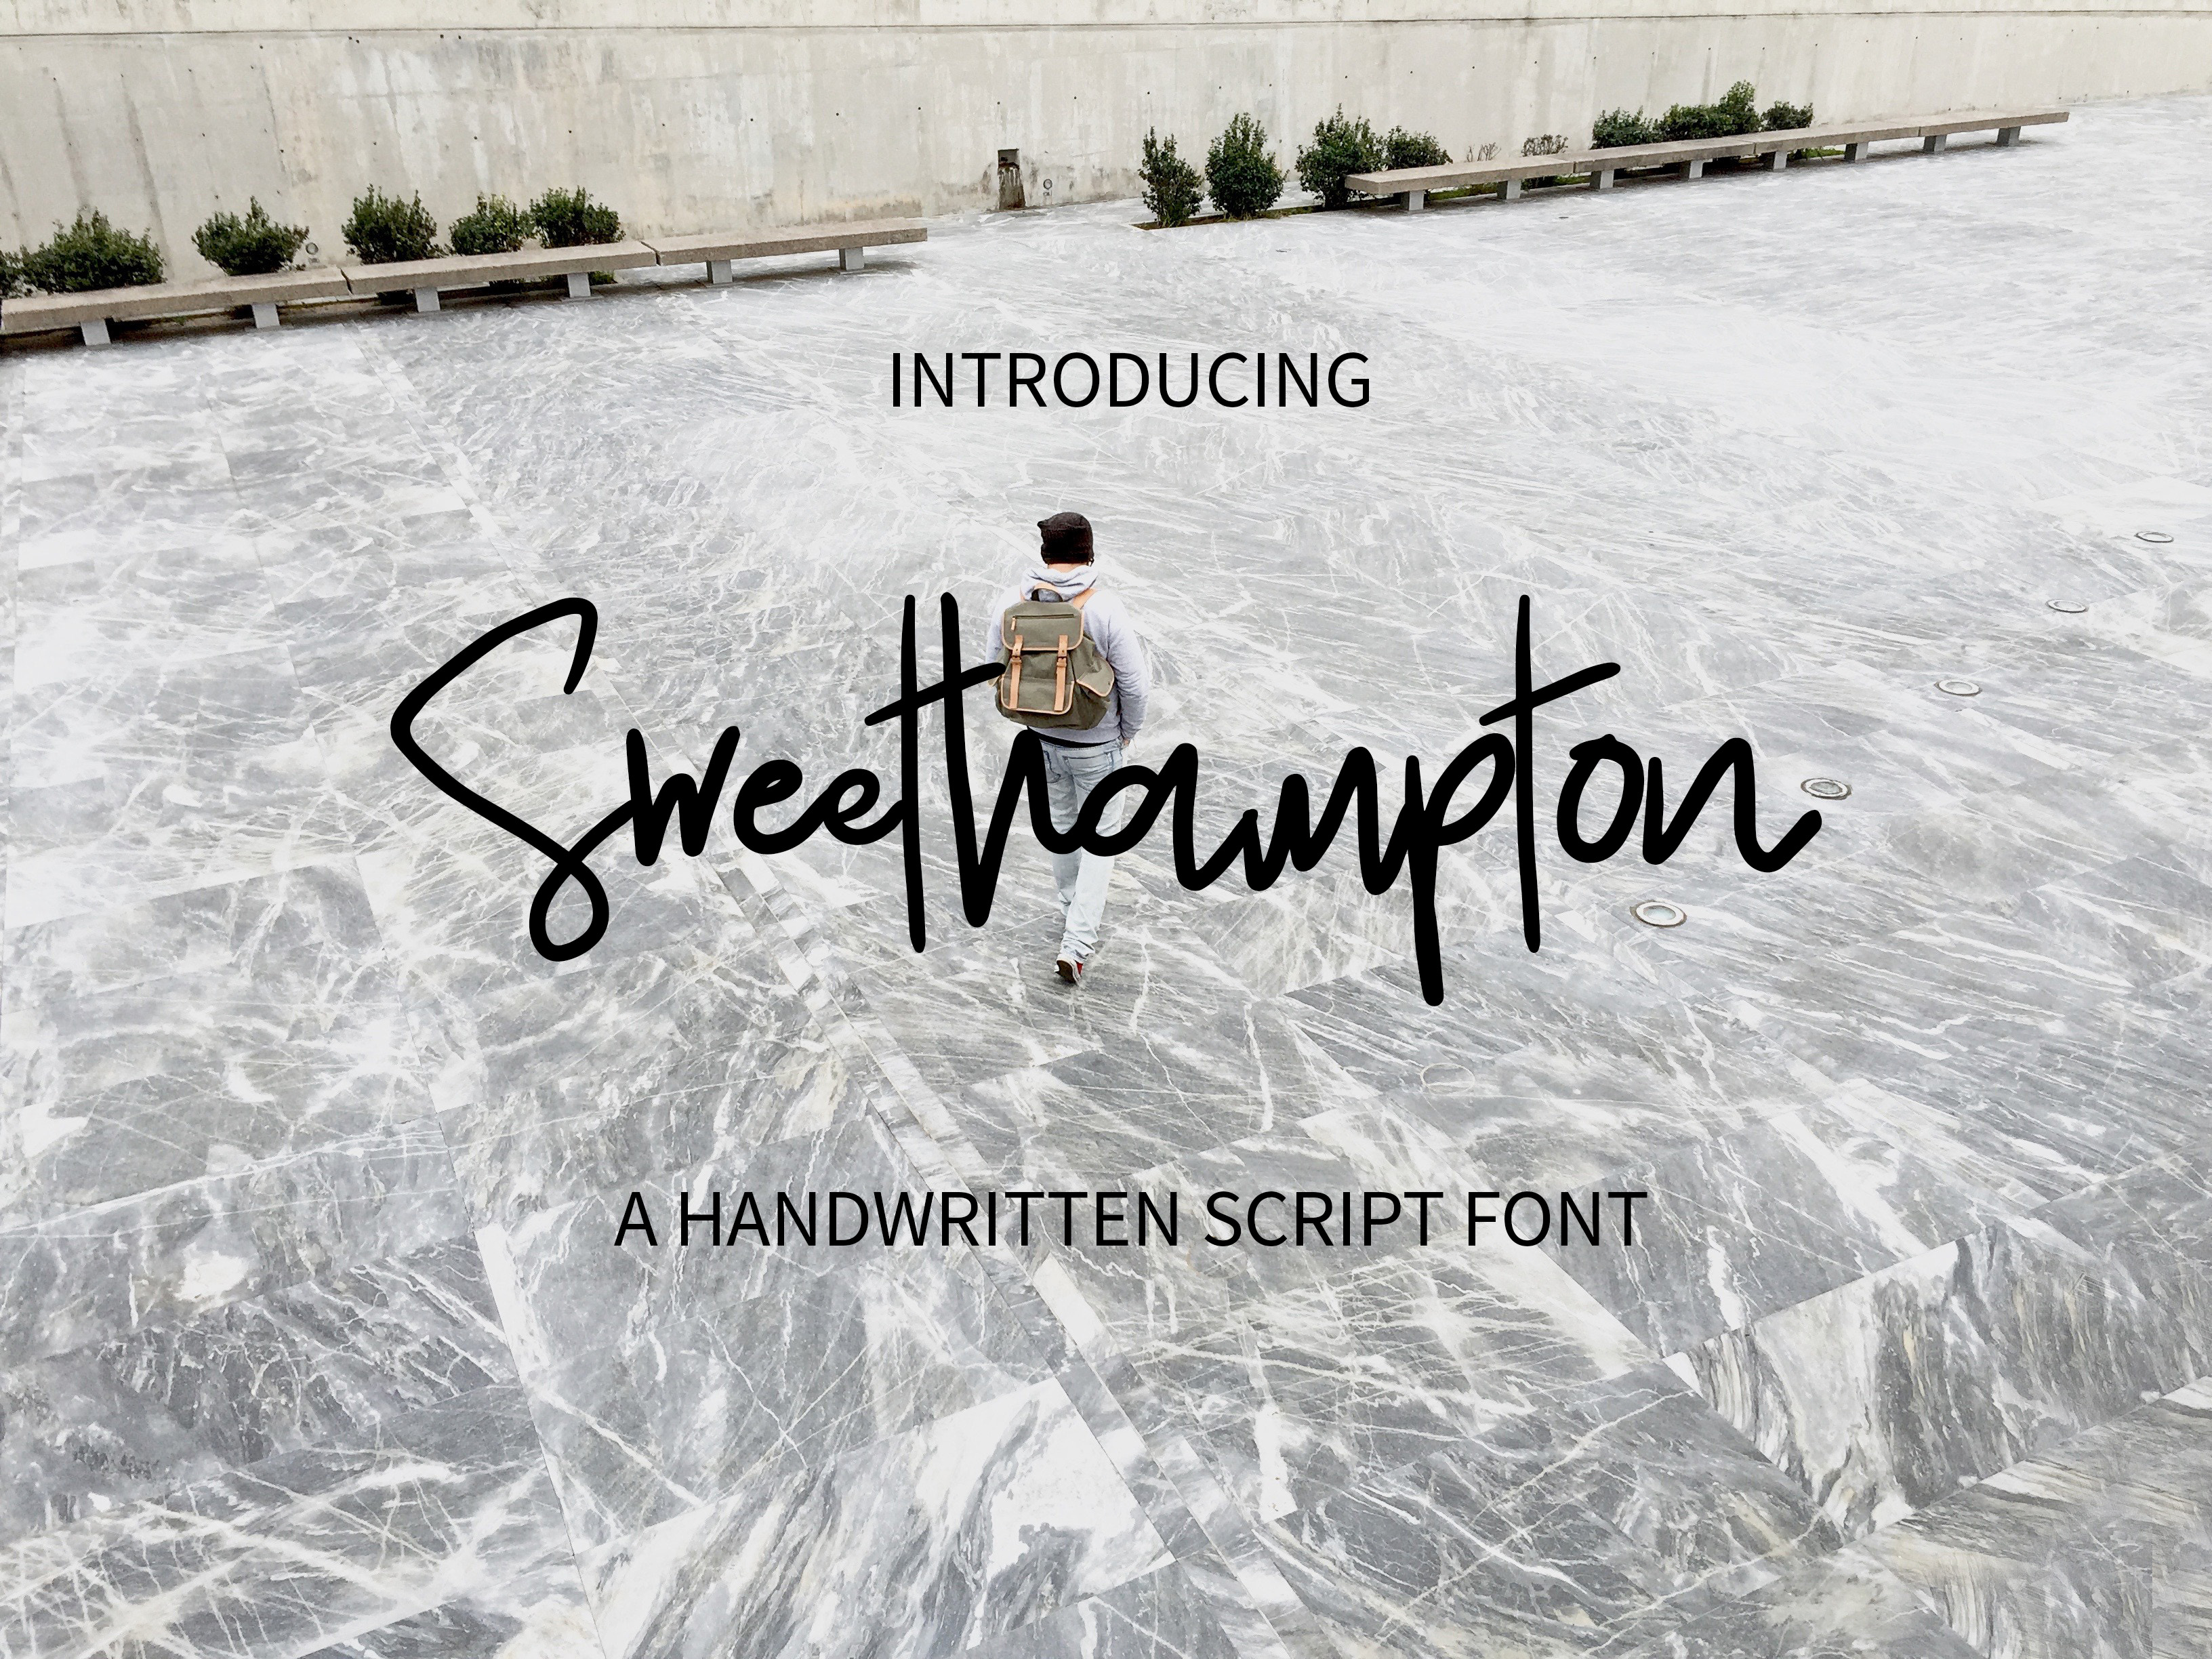 Sweethampton